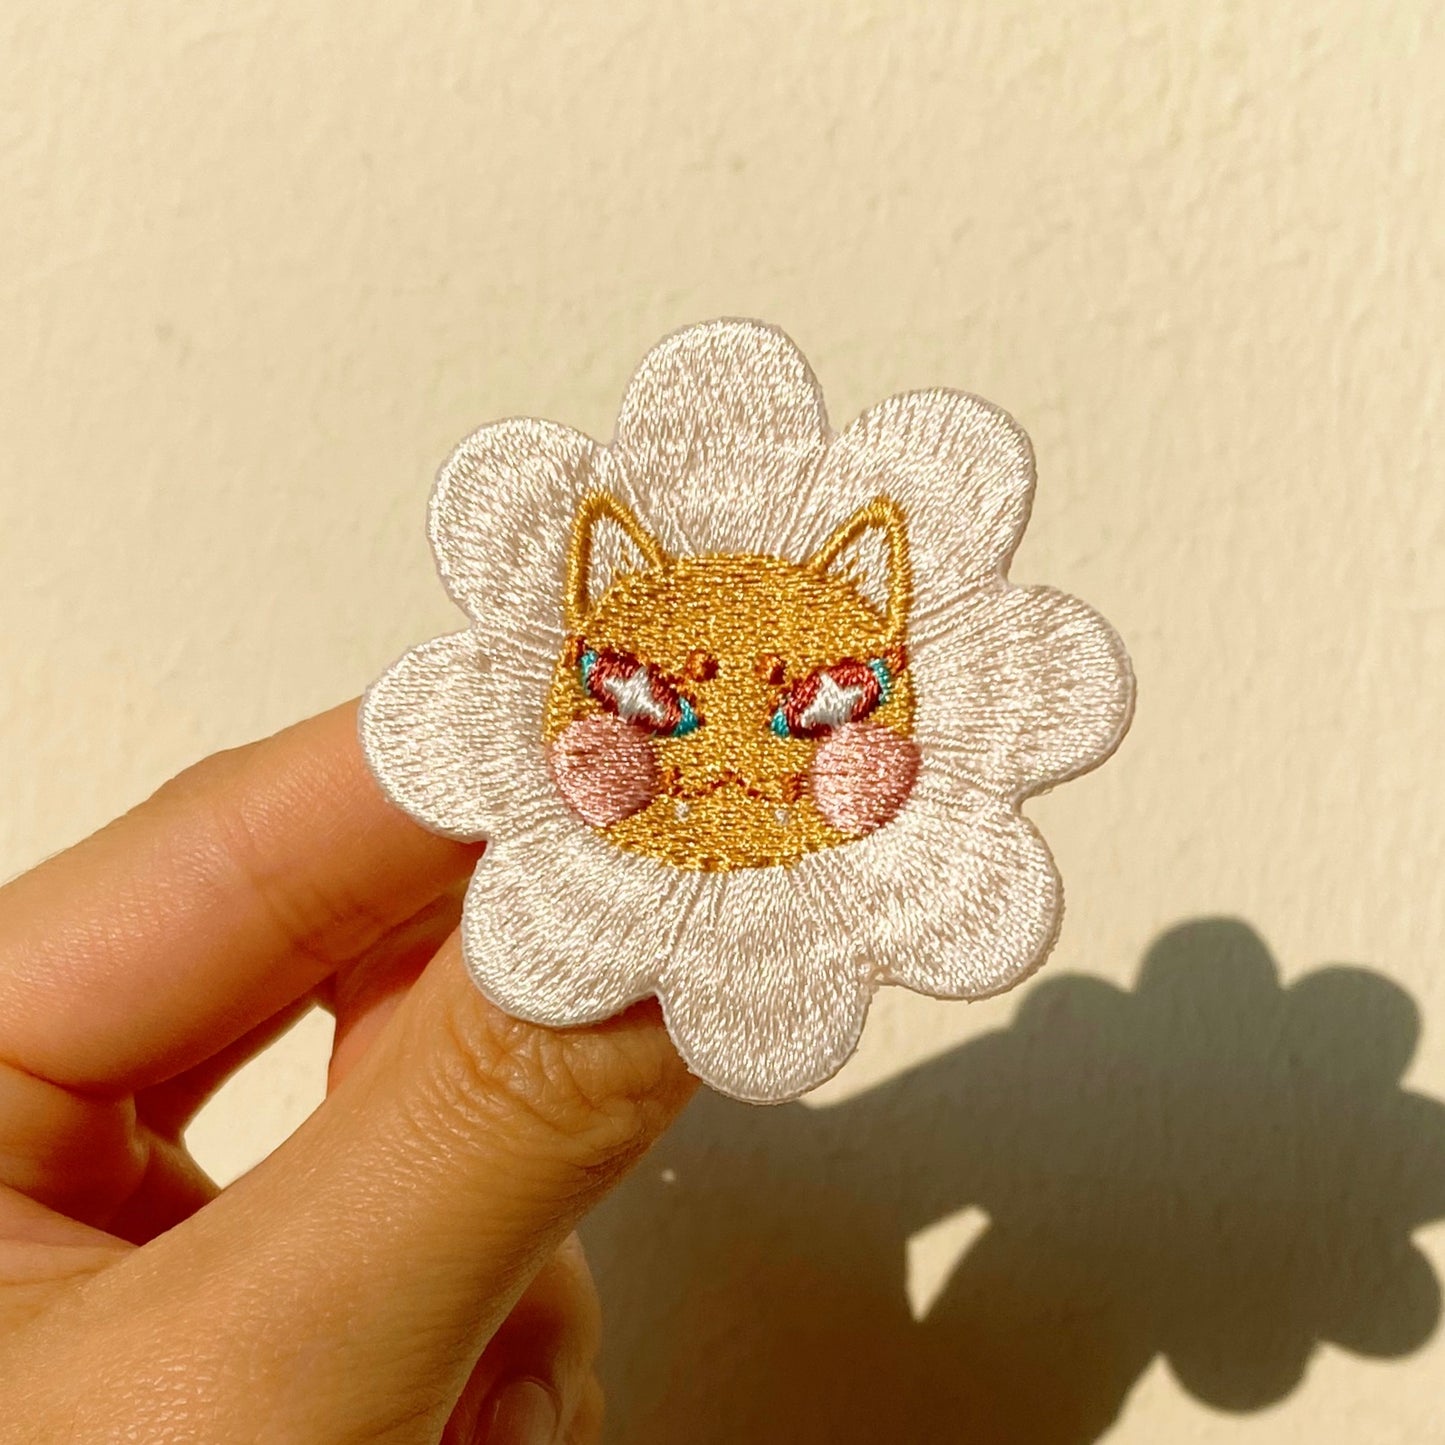 ShinnerCXI Embroidery Pin - Daisy Lion